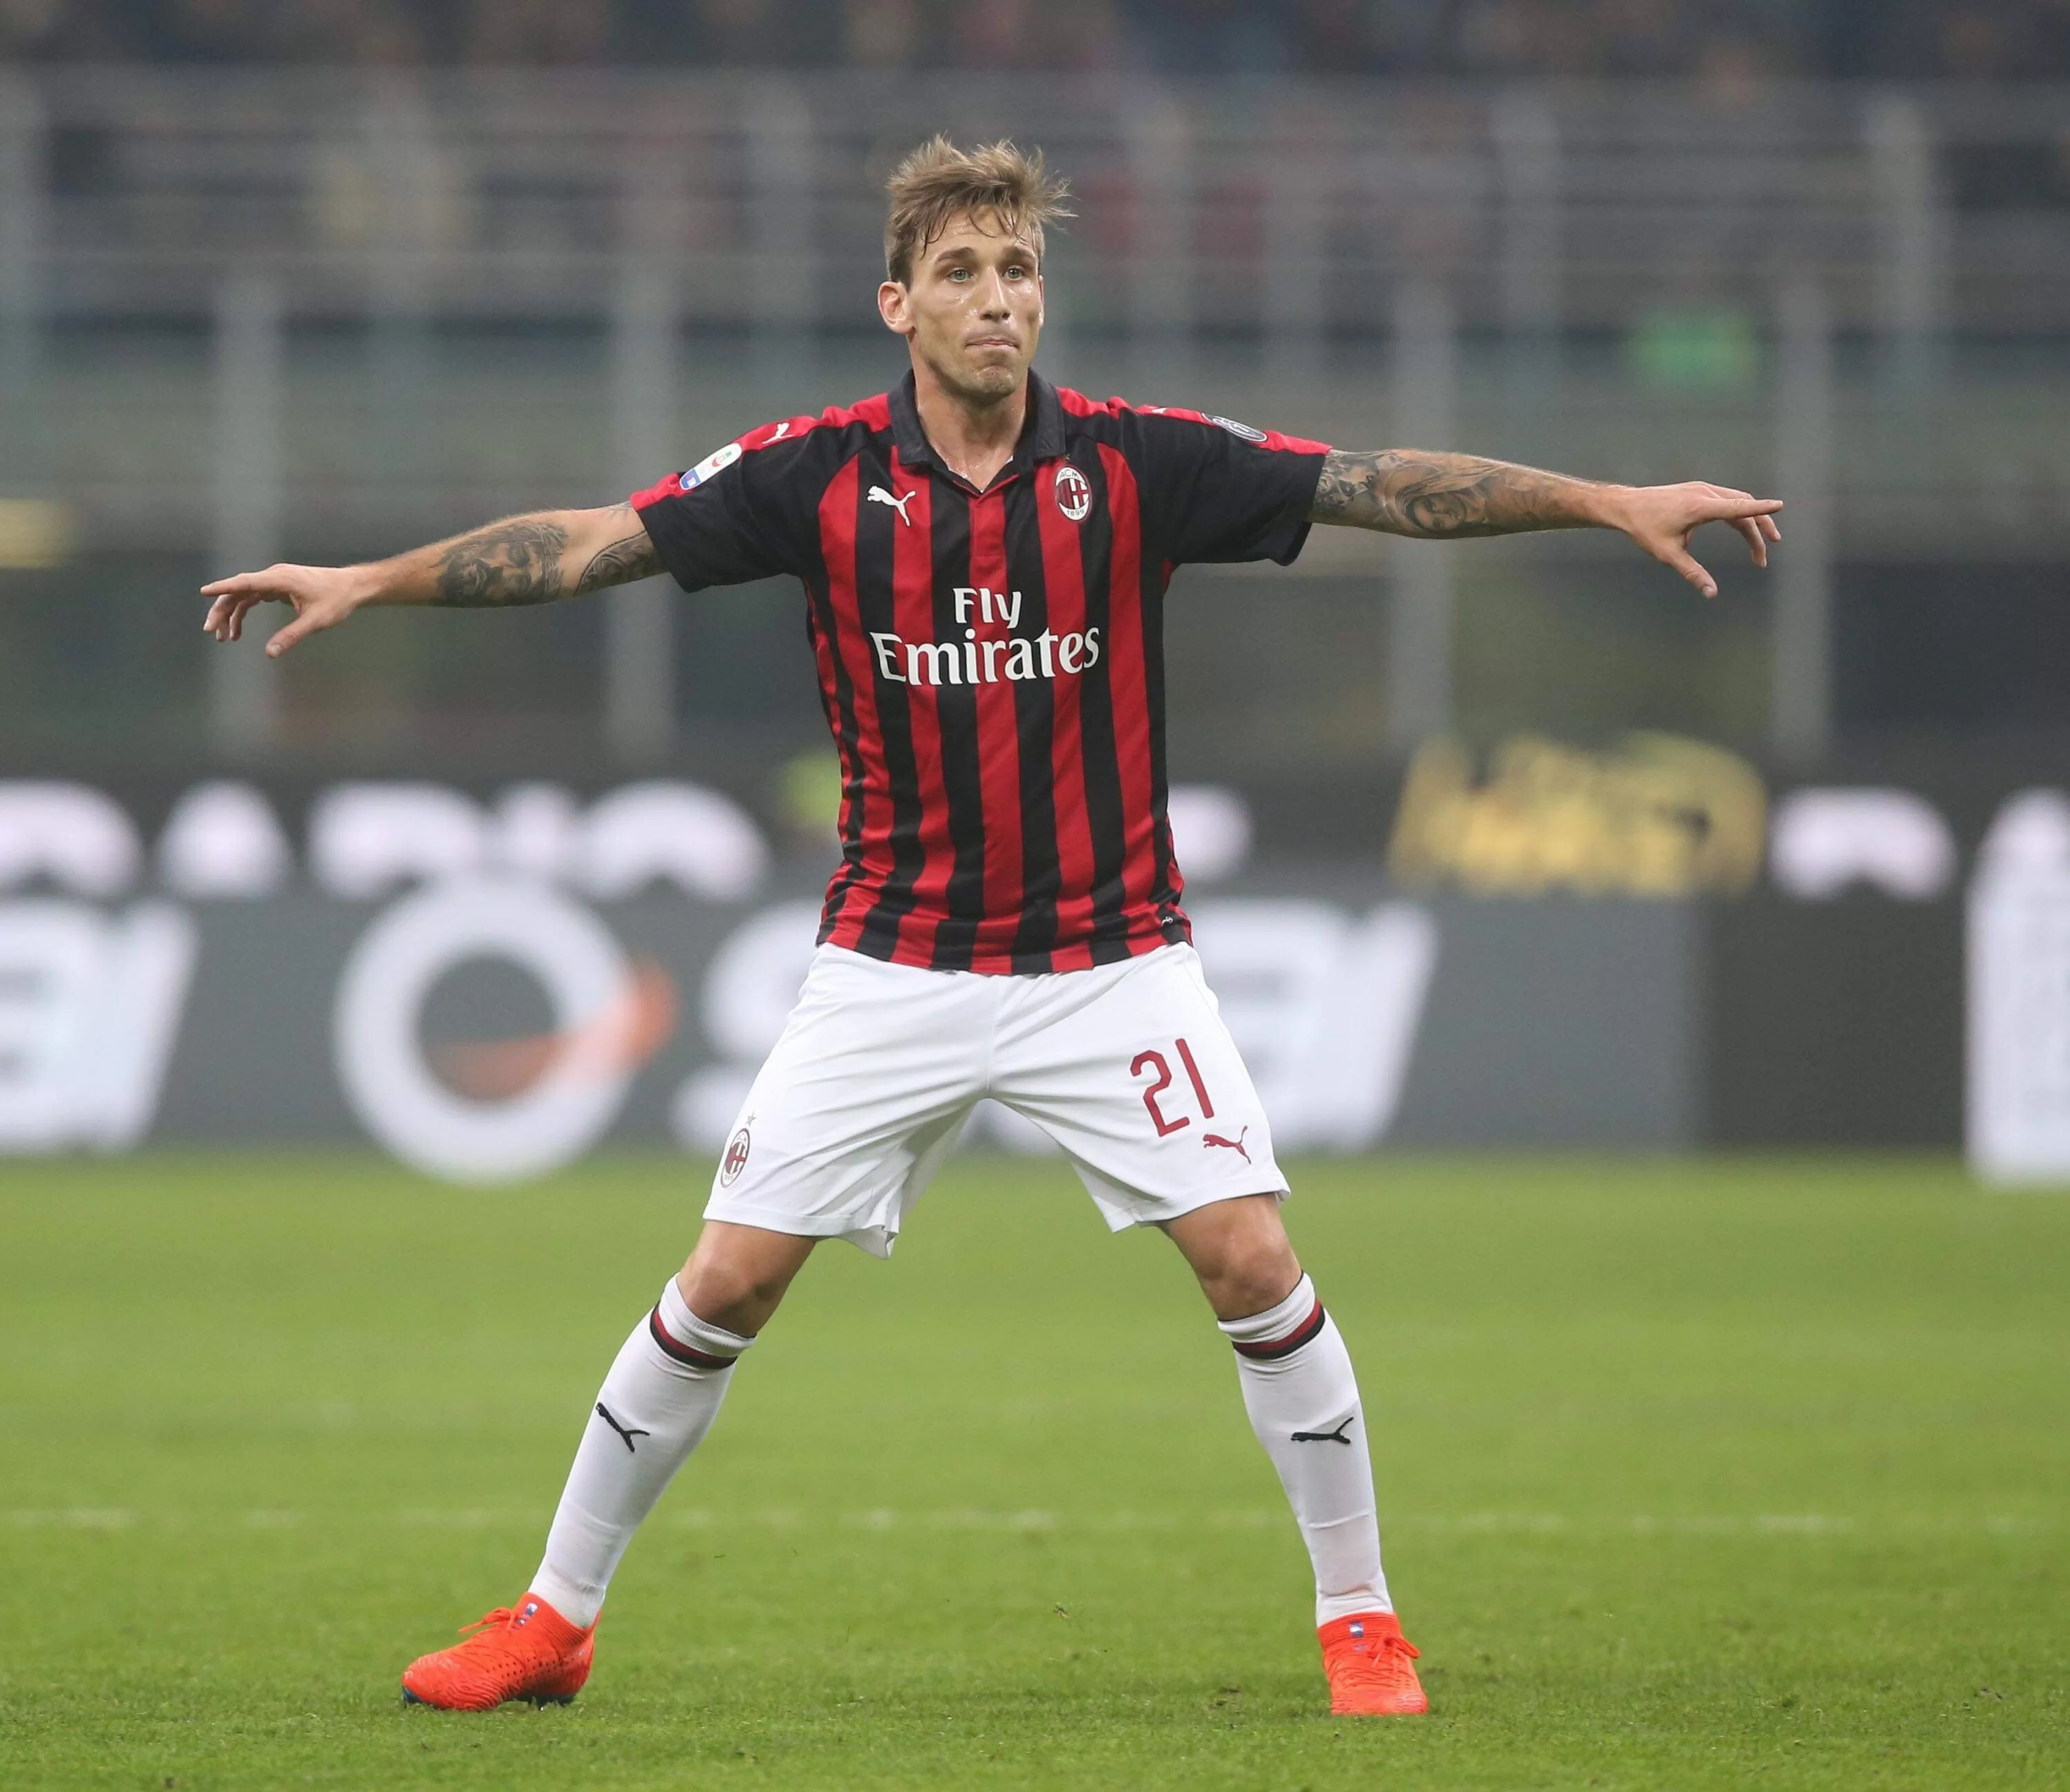 Agente Biglia: “Lucas vuole chiudere la carriera con il Milan”